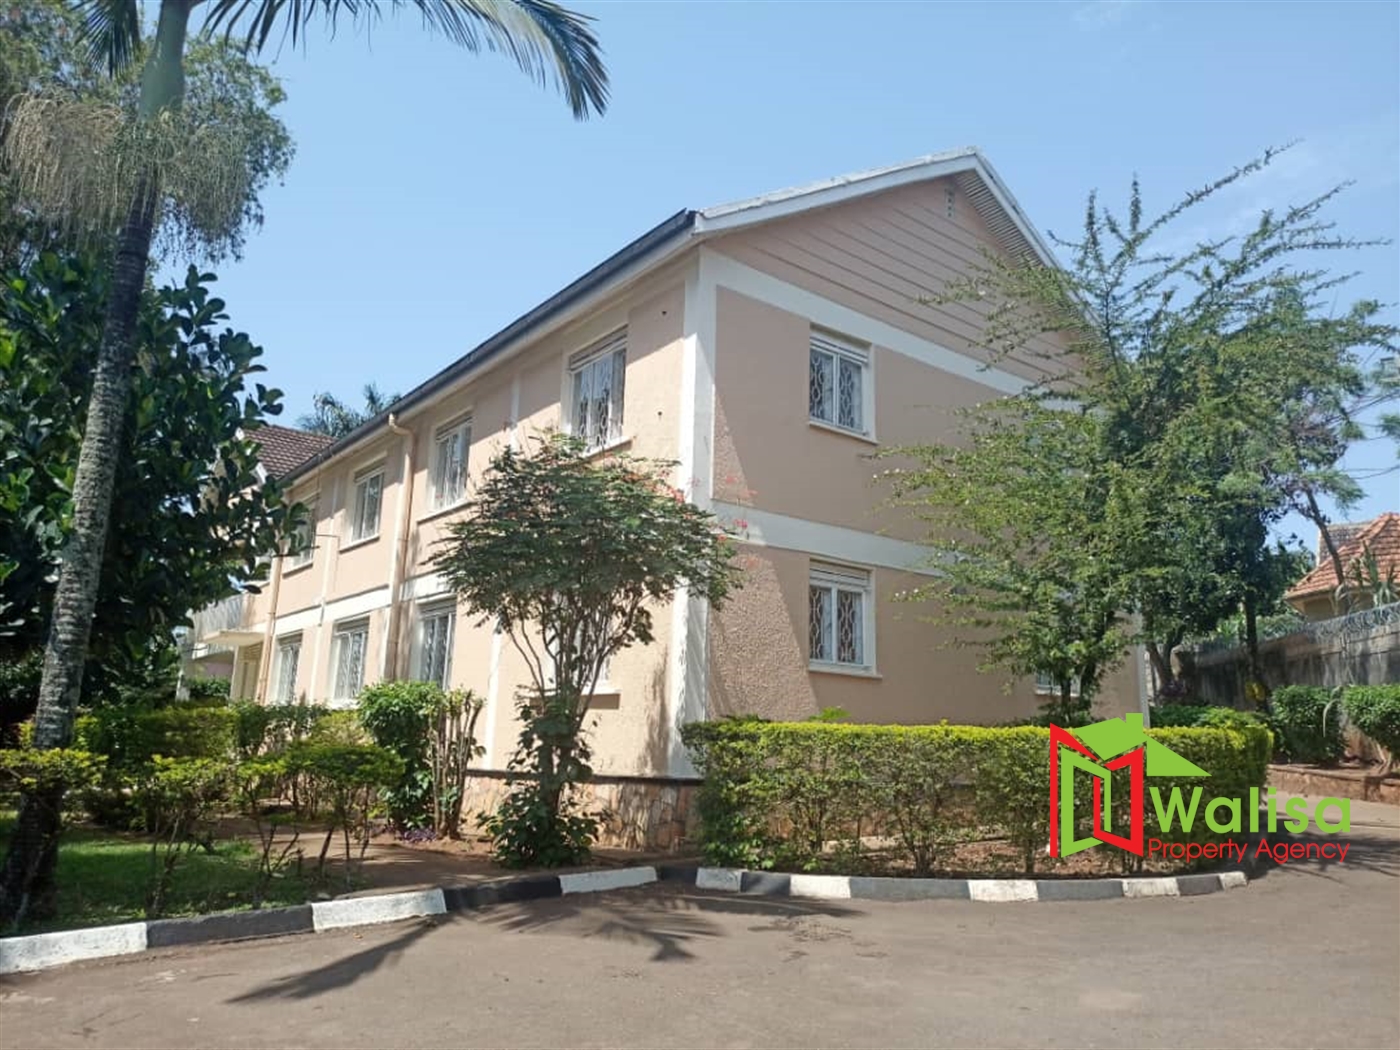 Apartment block for rent in Muyenga Kampala